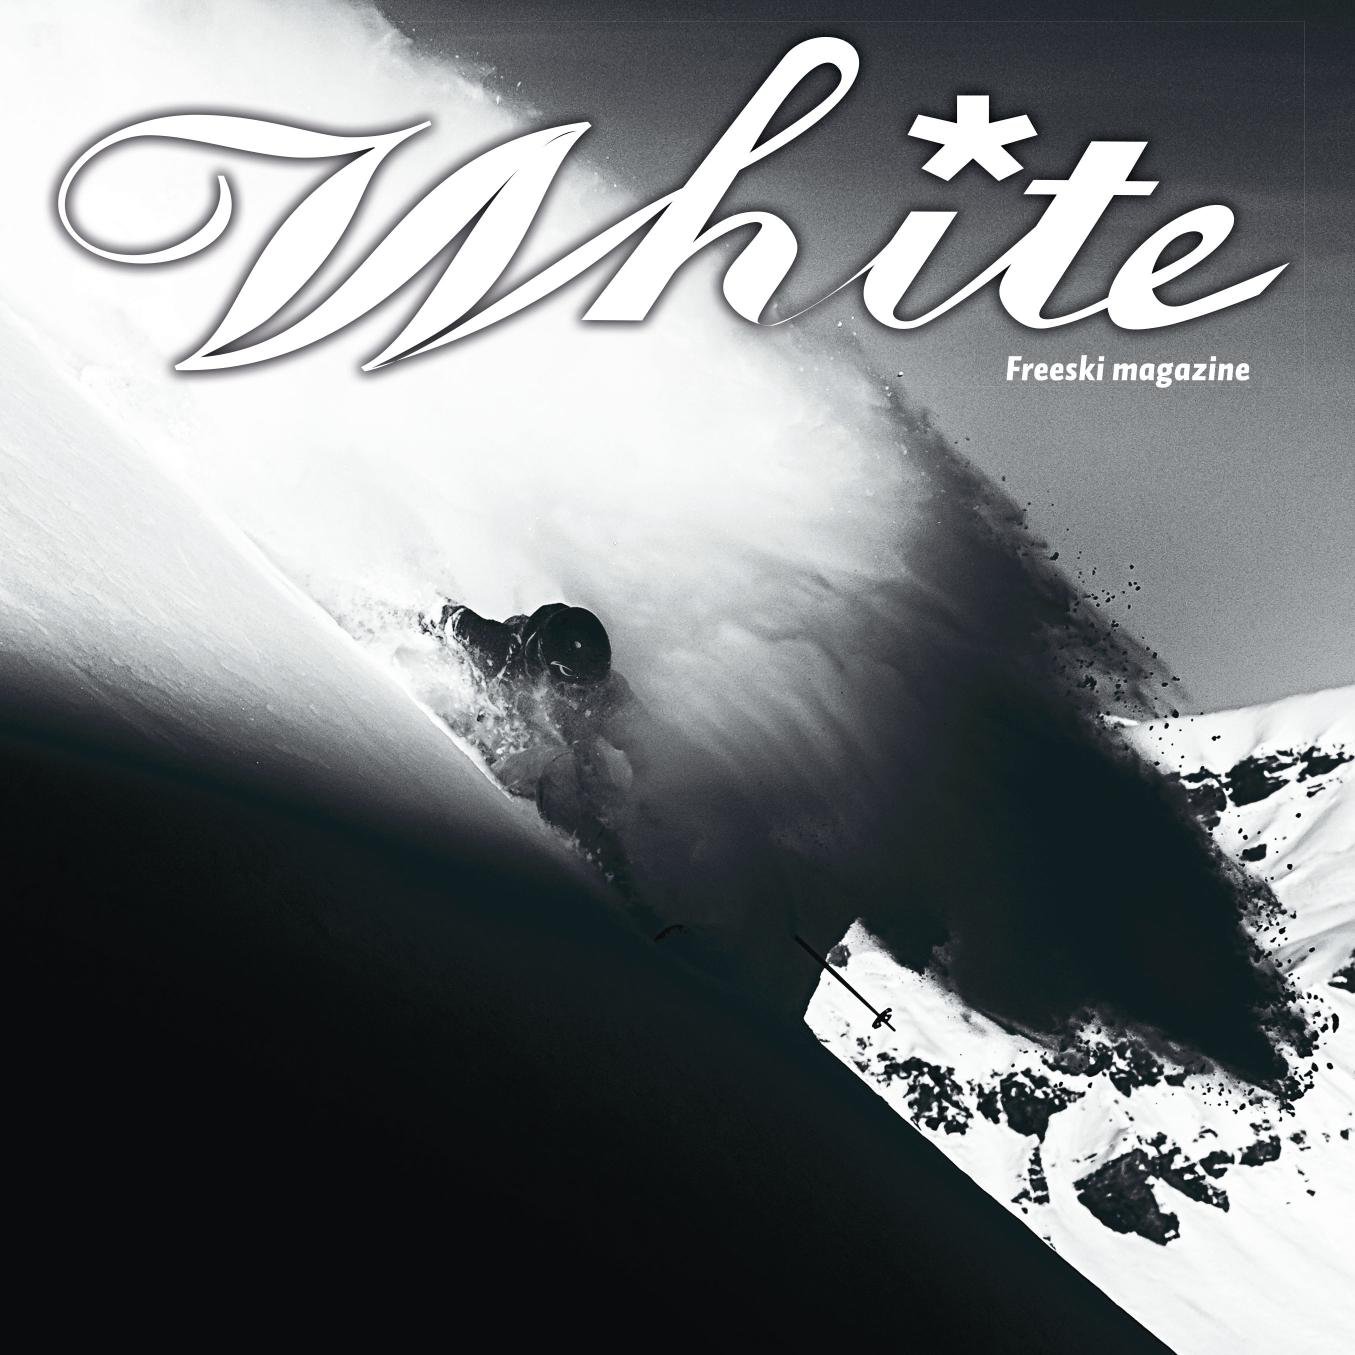 White freeski magazine